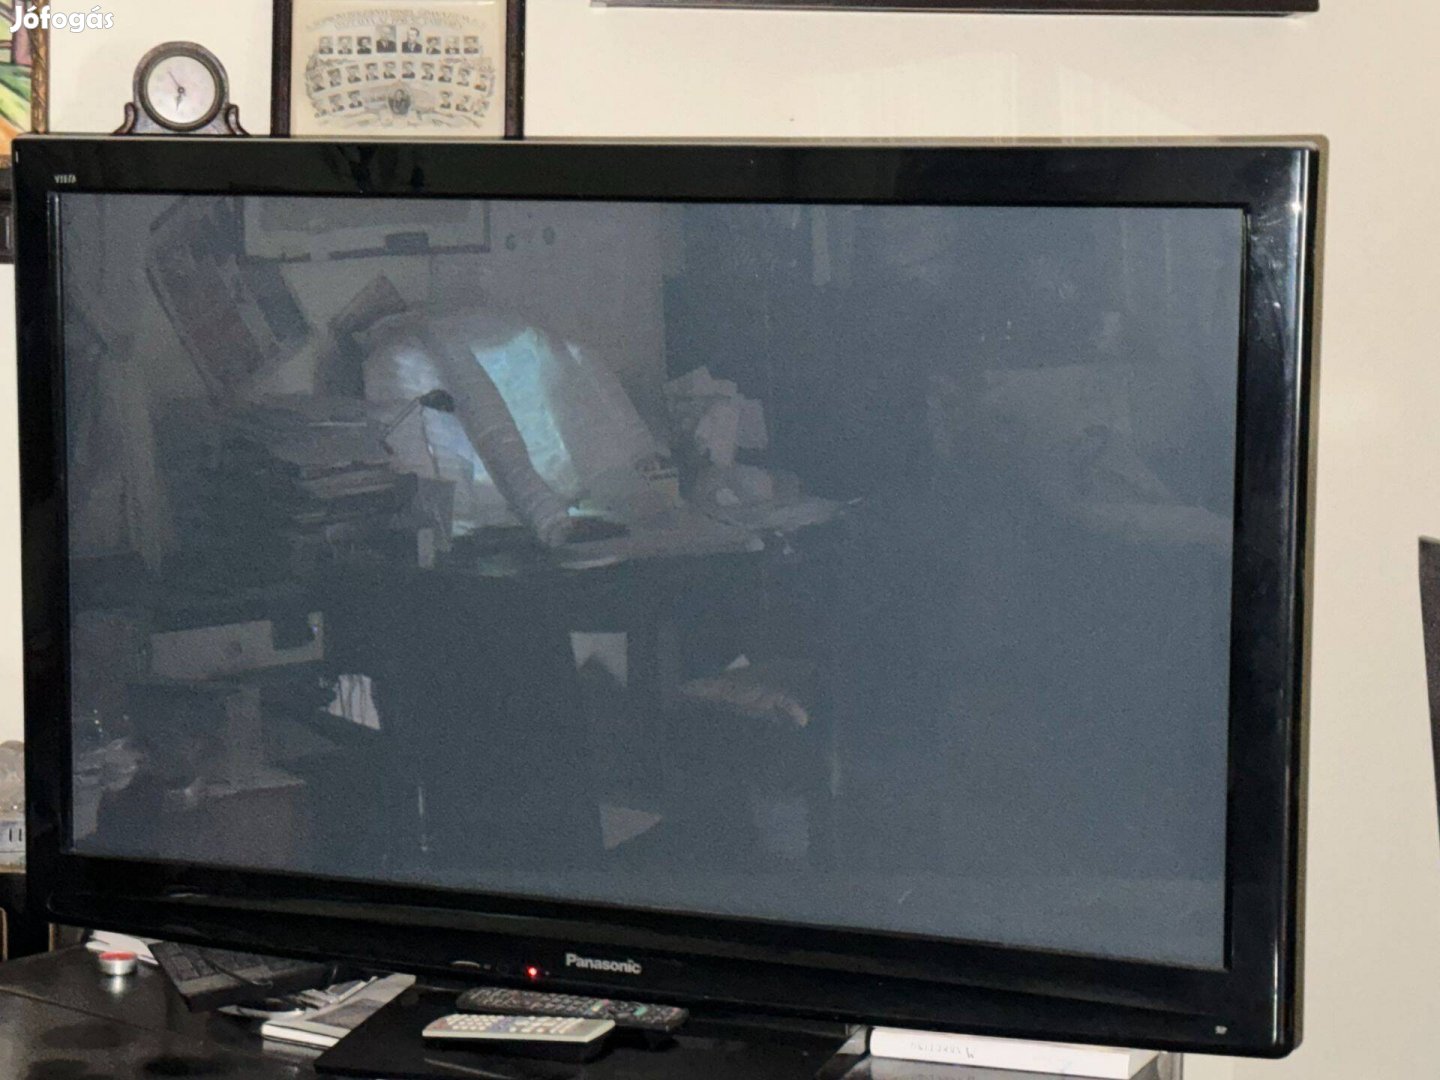 Eladó egy Panasonic plazma tv-készülék